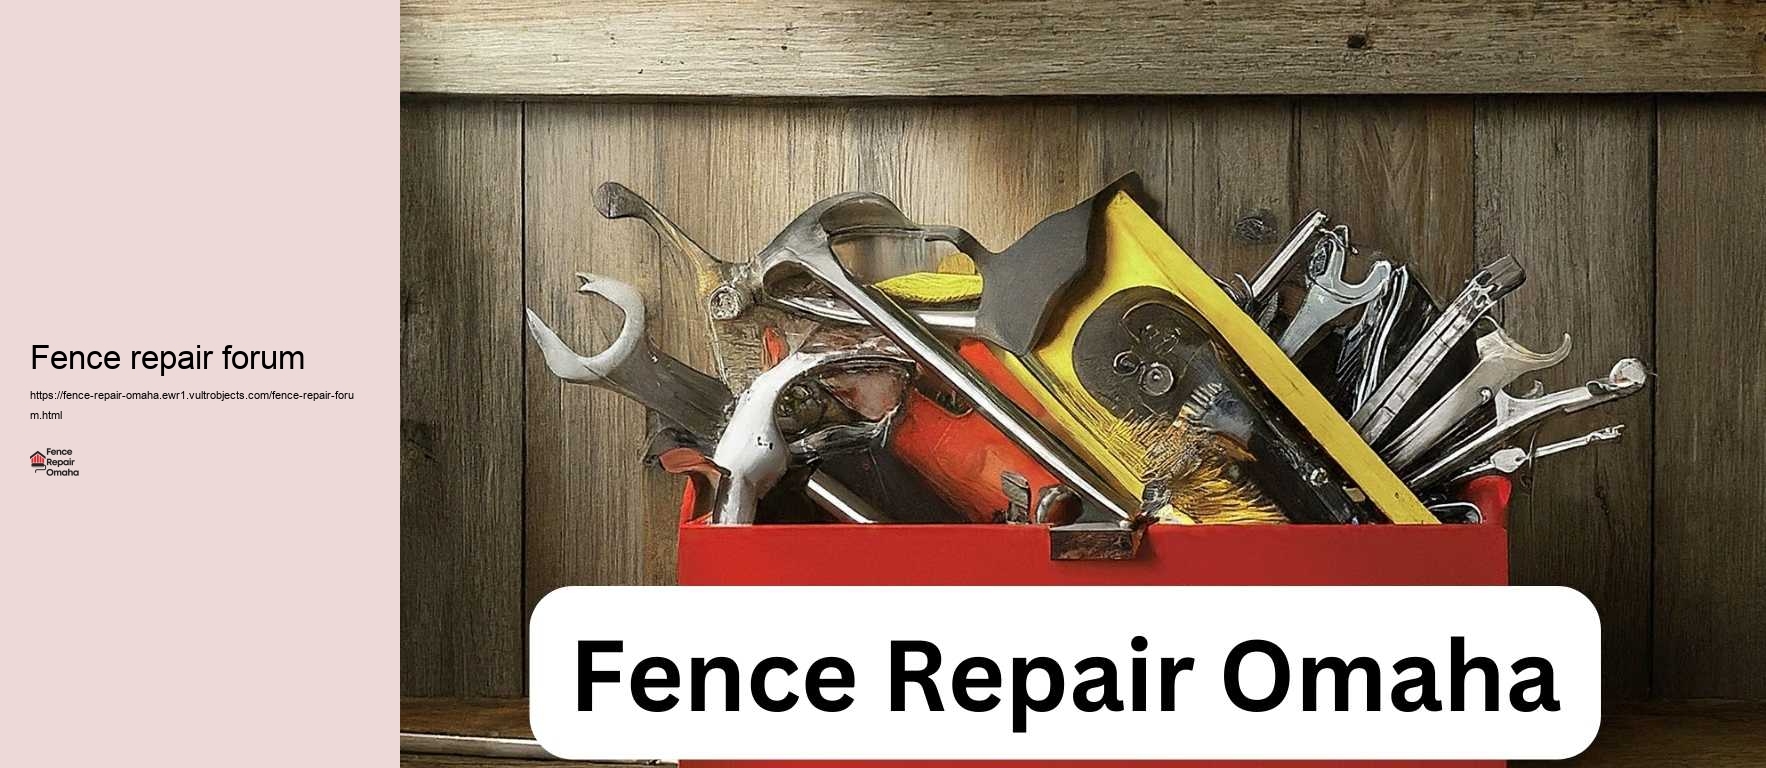 Fence repair forum